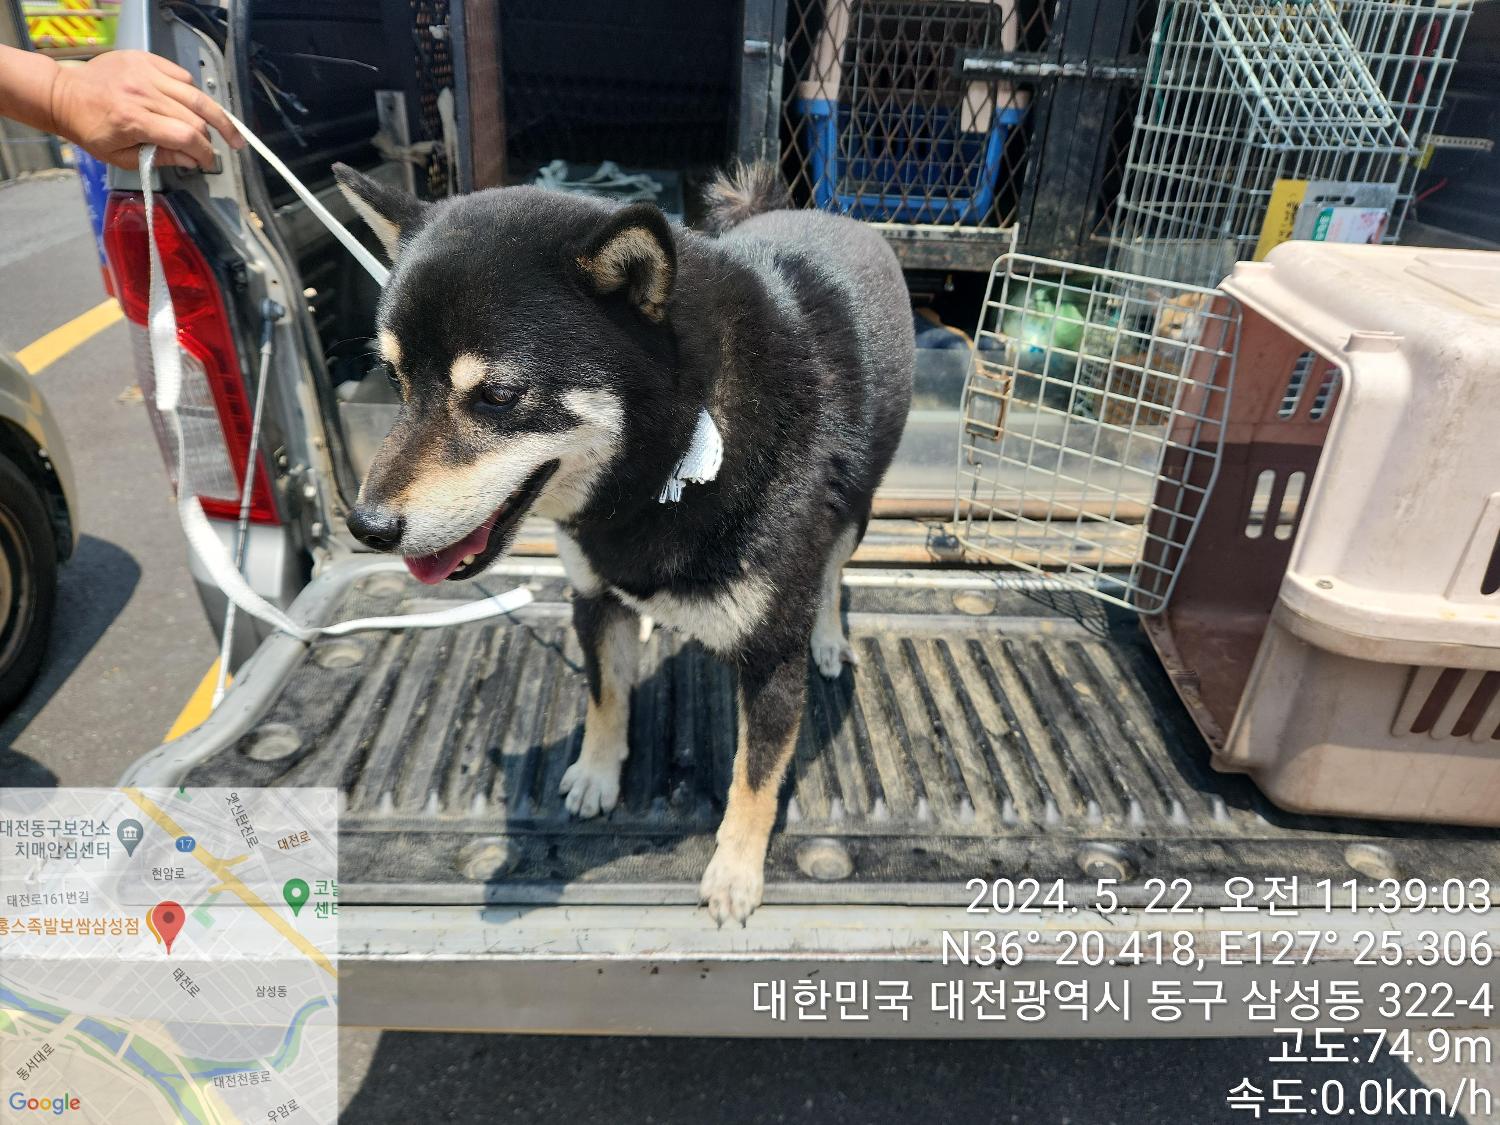 공고 번호가 대전-대덕-2024-00093인 시바 동물 사진